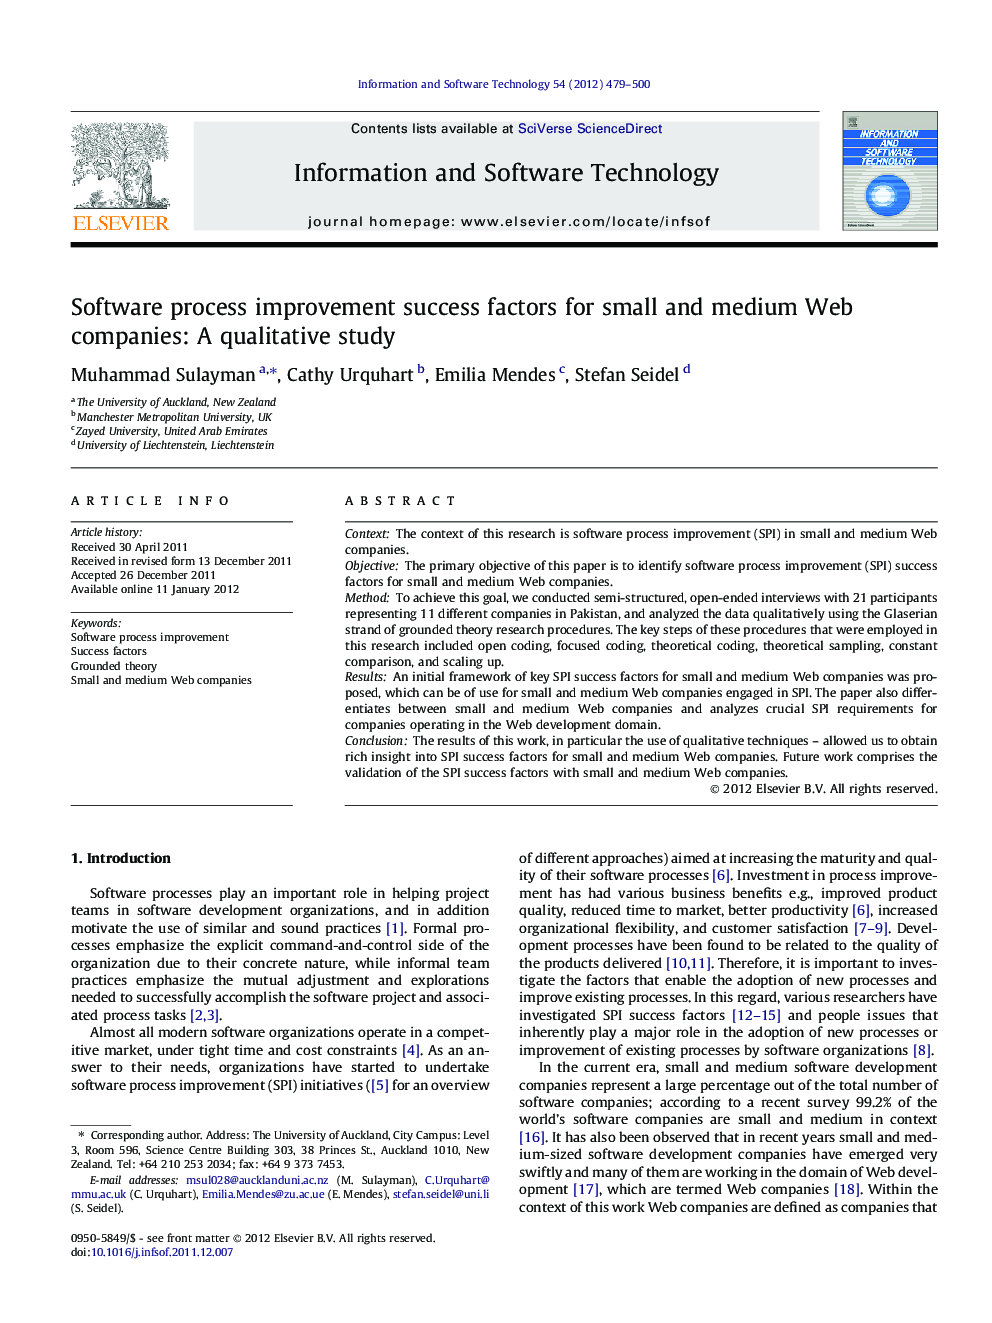 Software process improvement success factors for small and medium Web companies: A qualitative study